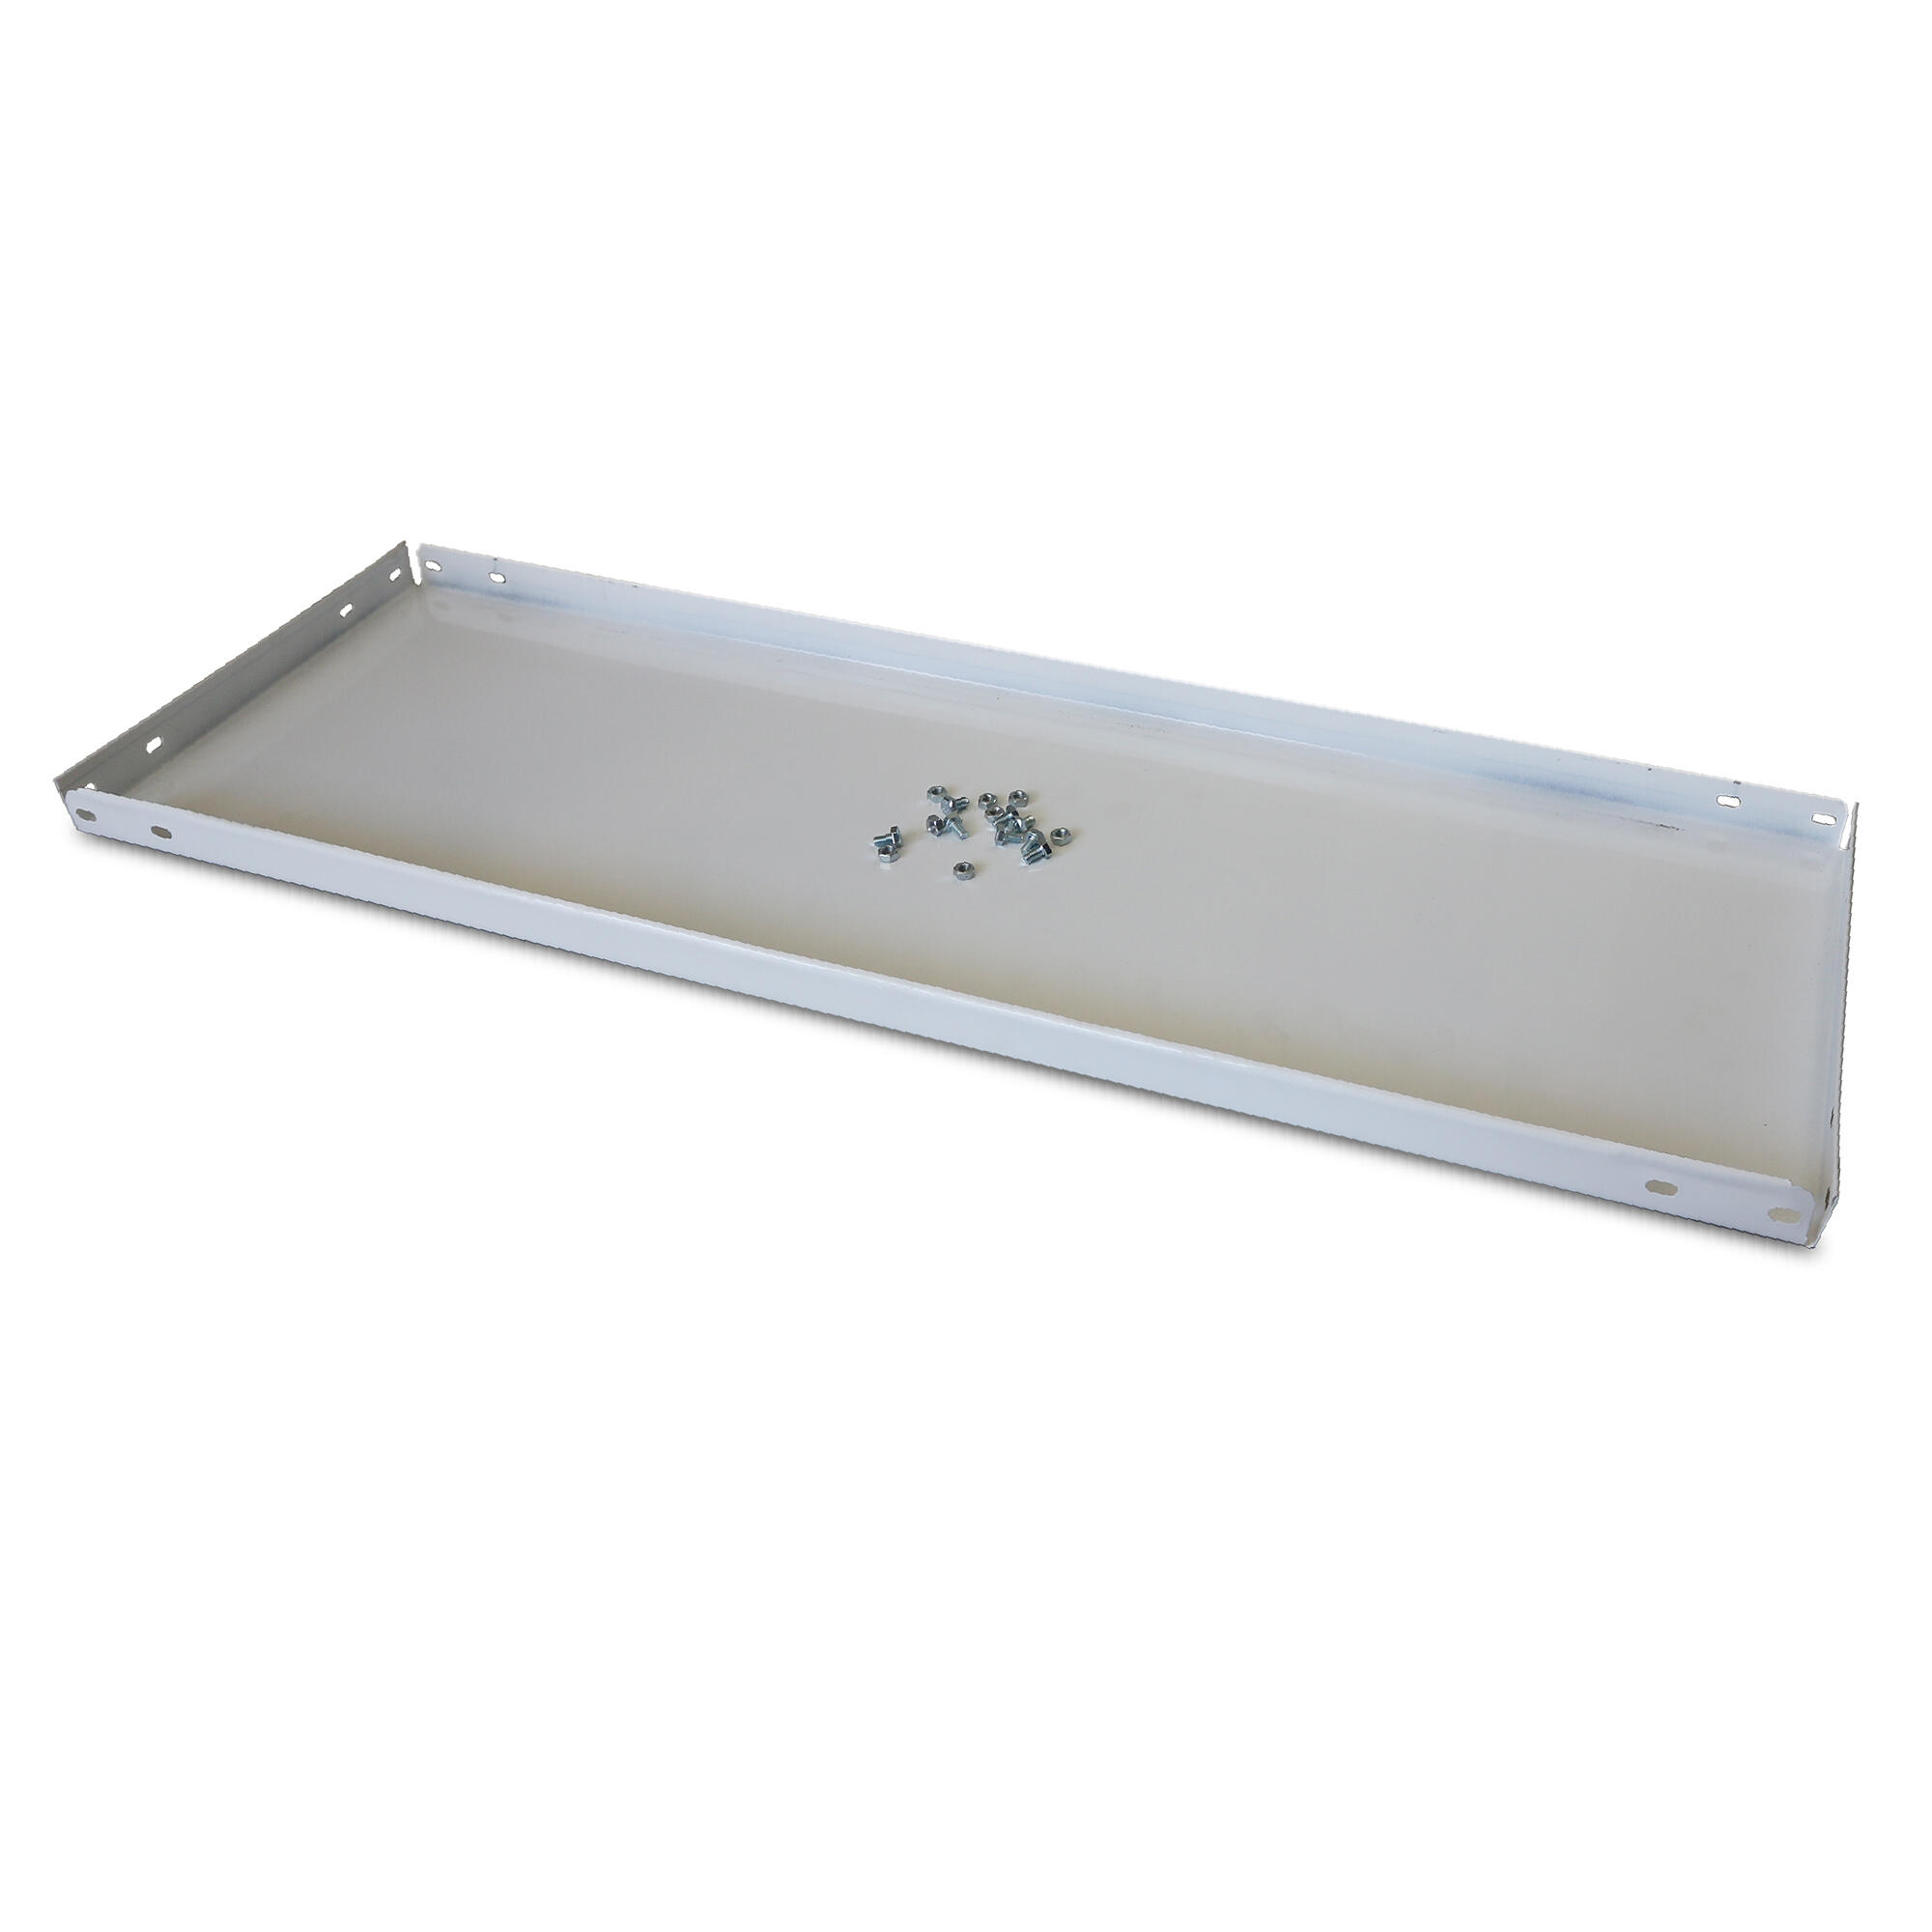 Balda recta para sistema de estantes de acero blanco de 80x40cm